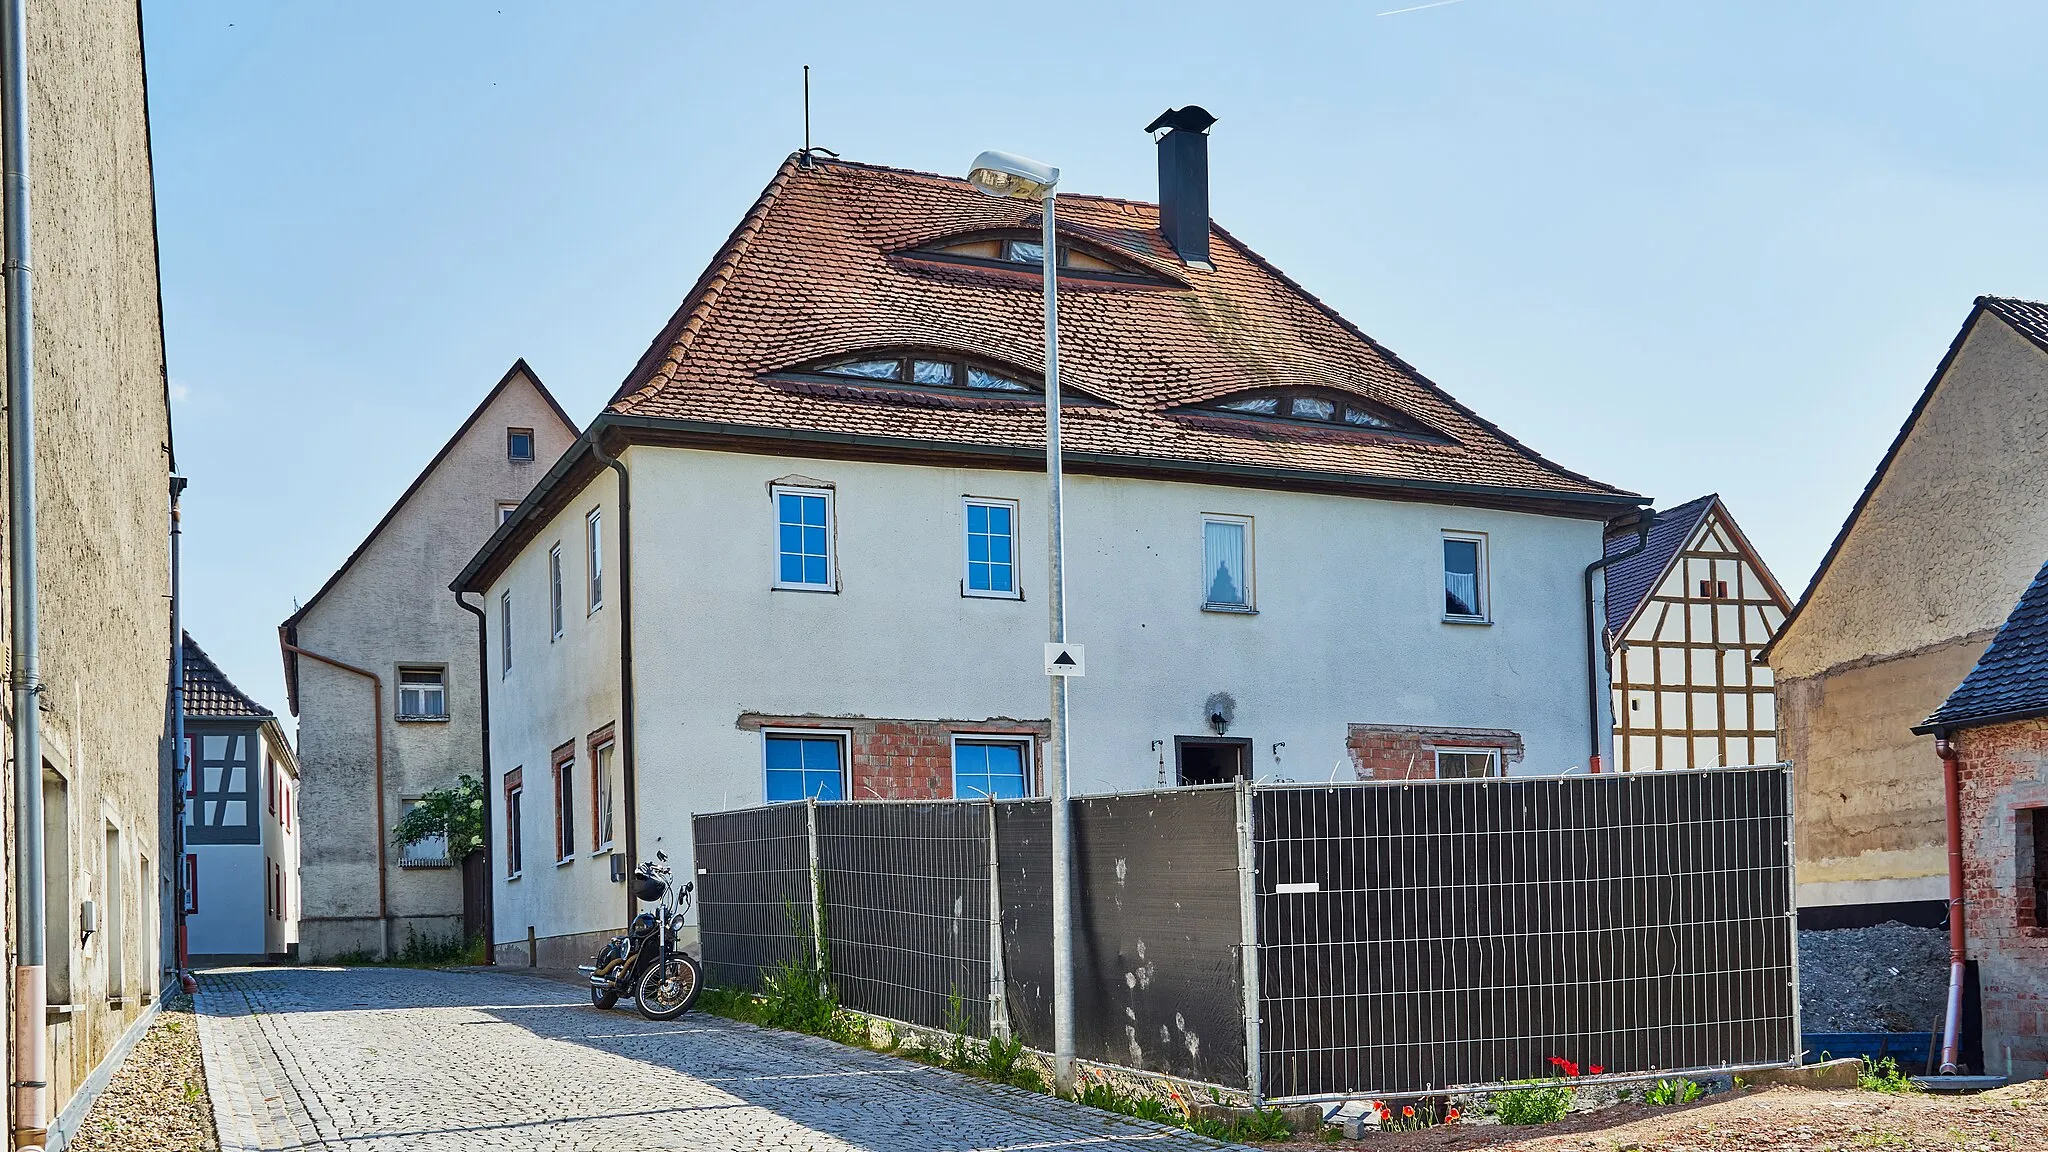 Photo showing: Wohnhaus, zweigeschossiger Walmdachbau mit Fledermausgauben, teils verputztes Fachwerk, 18. Jahrhundert, Ansicht von Norden